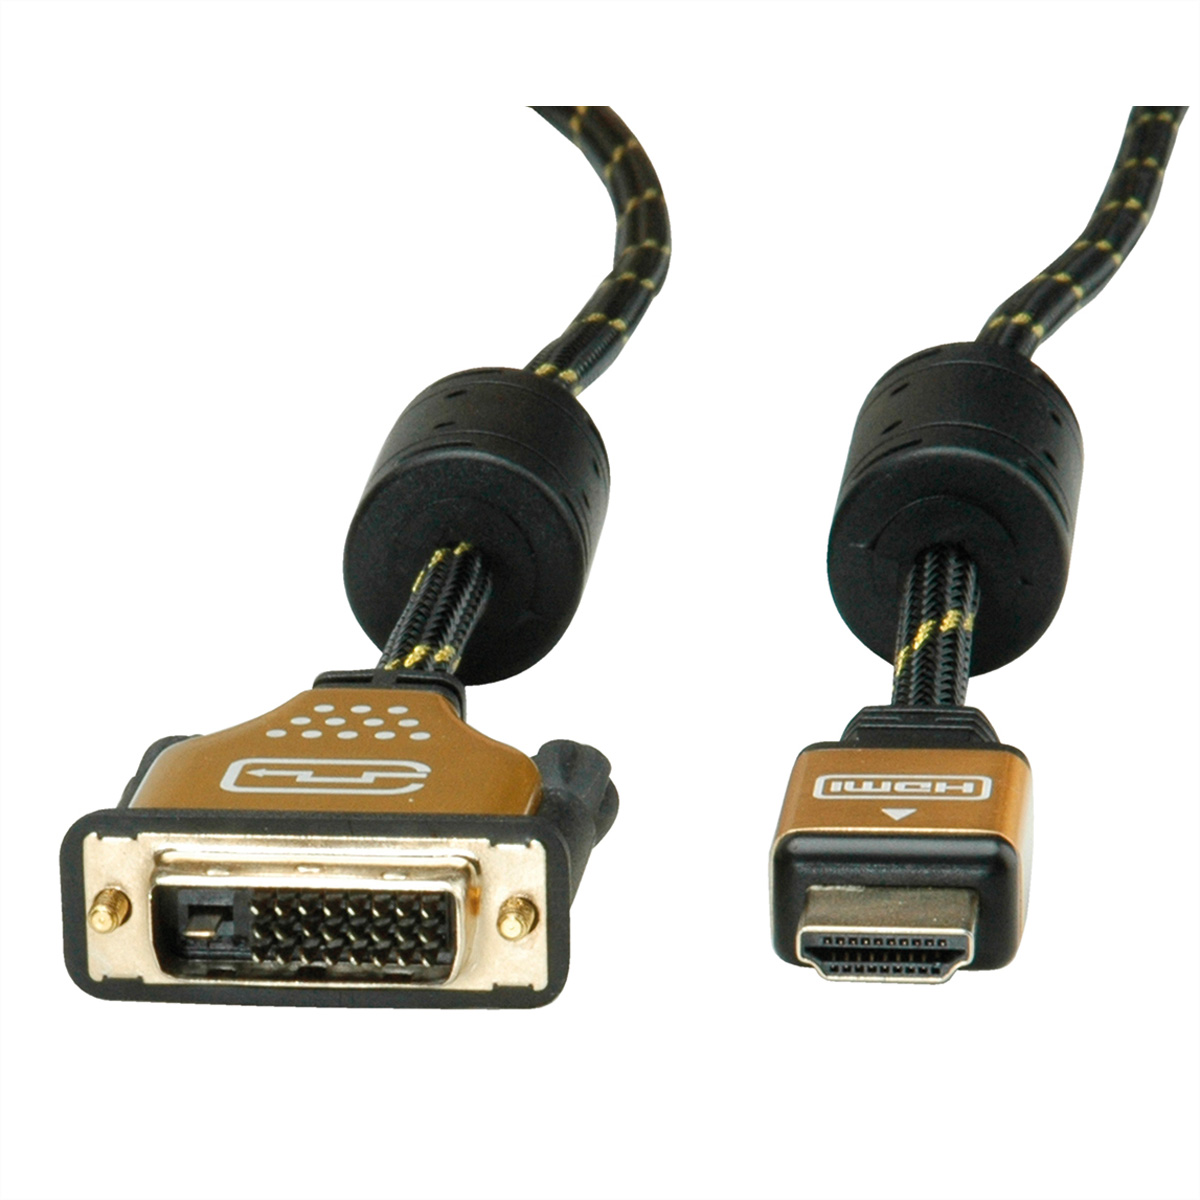 HDMI-DVI-Kabel, GOLD ST/ST, Monitorkabel 1 - m DVI ROLINE HDMI, (24+1)